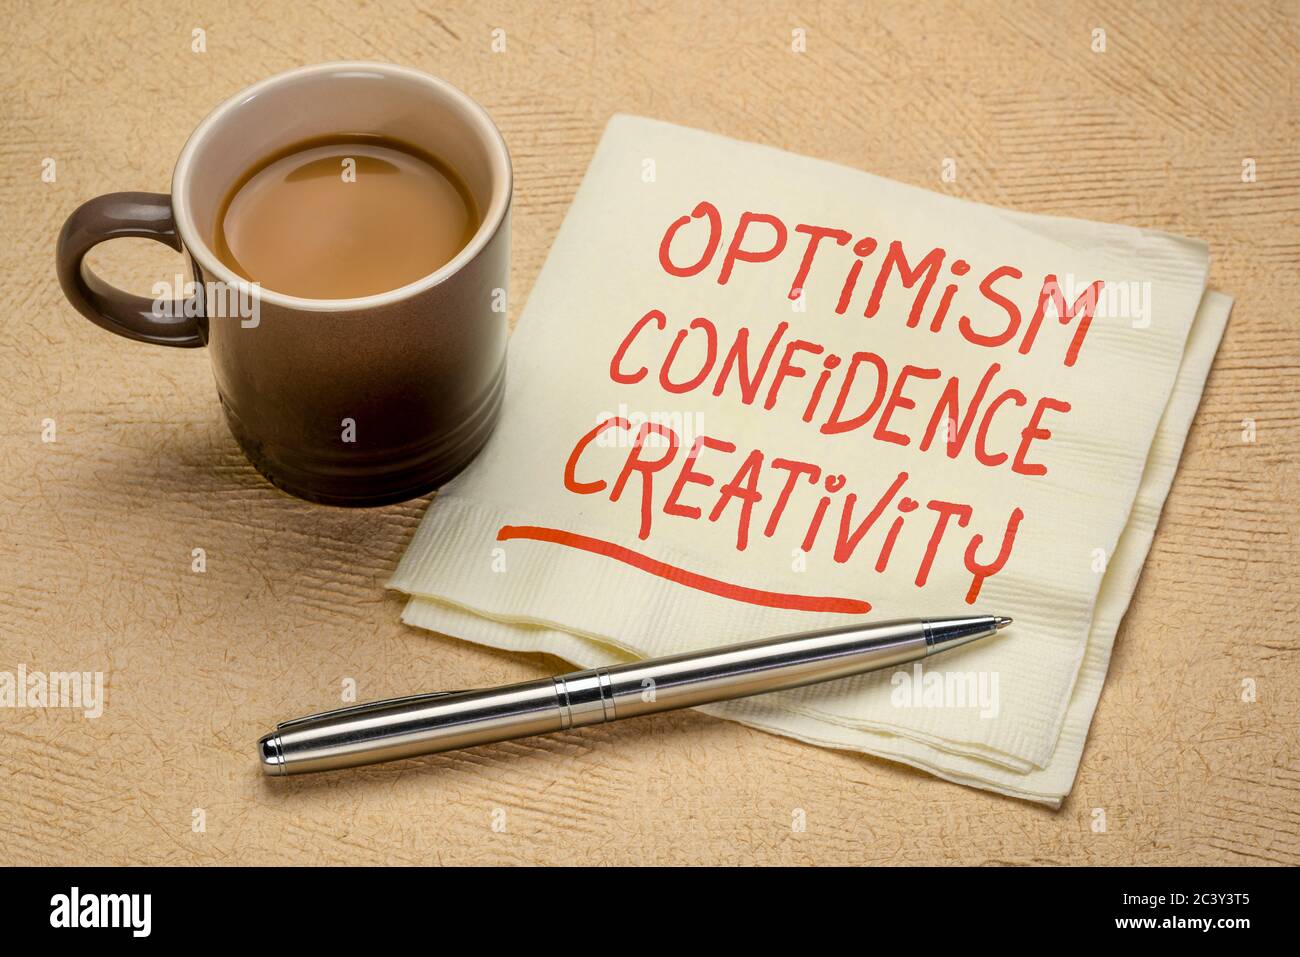 Optimismus, Selbstvertrauen, Kreativität inspirierende Handschrift auf Serviette mit einer Tasse Kaffee, Karriere, Lifestyle und persönlichem Entwicklungskonzept Stockfoto